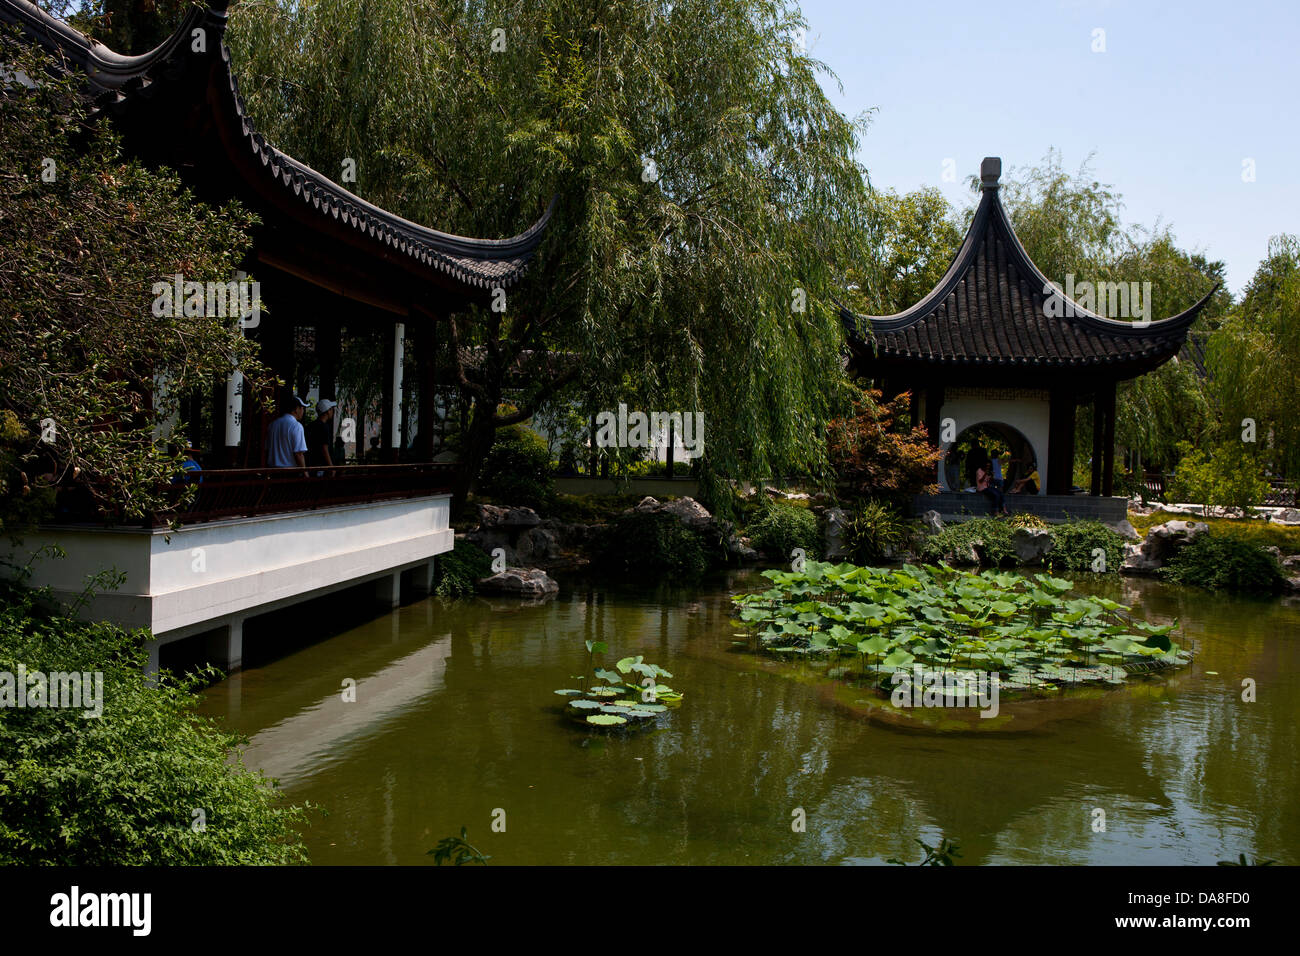 Chinesischer Garten, der Huntington Library, Art Collection, und der Botanische Garten von San Marino, Kalifornien, Vereinigte Staaten von Amerika Stockfoto